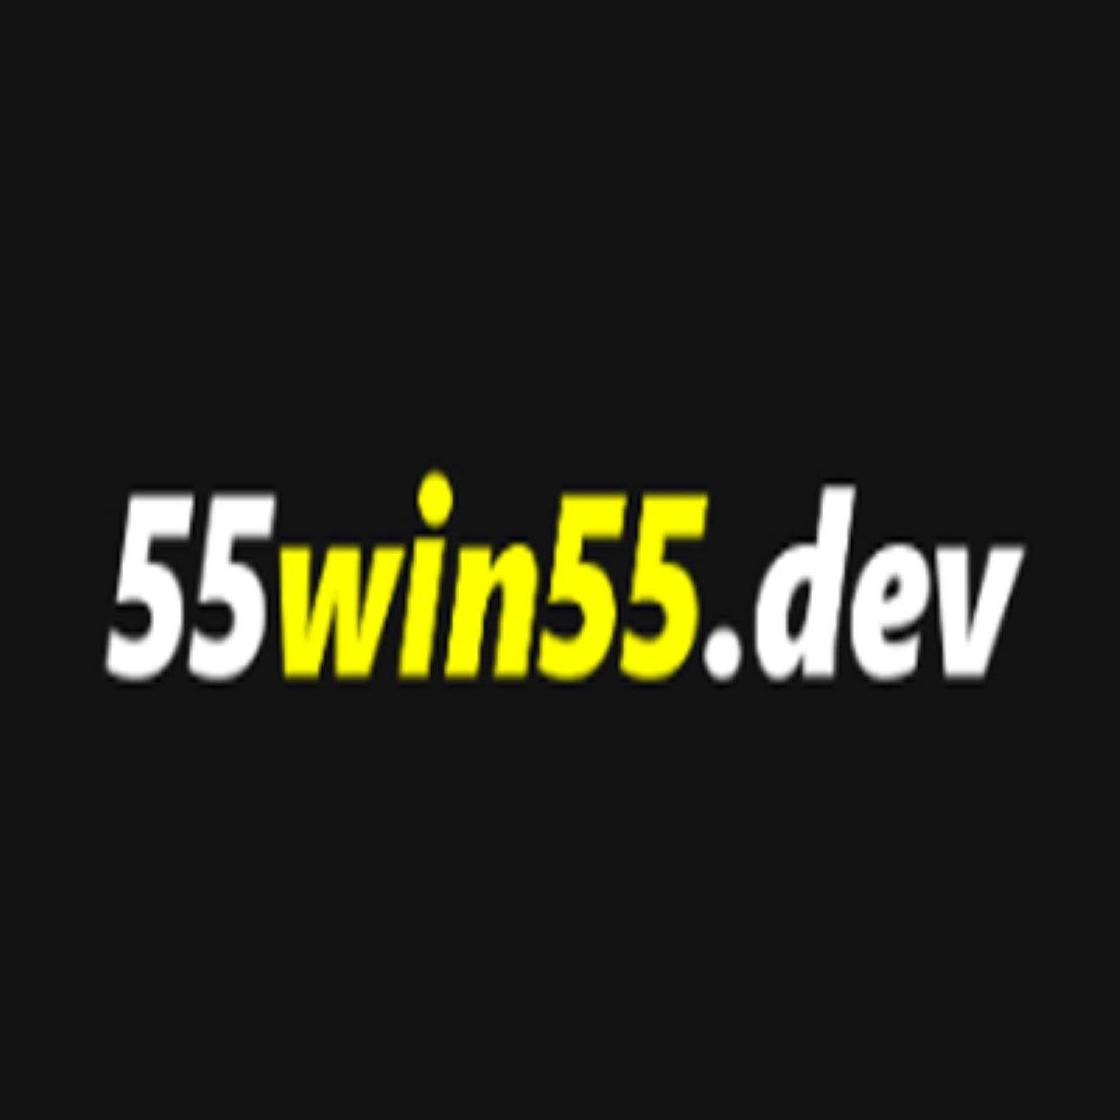 55win55dev